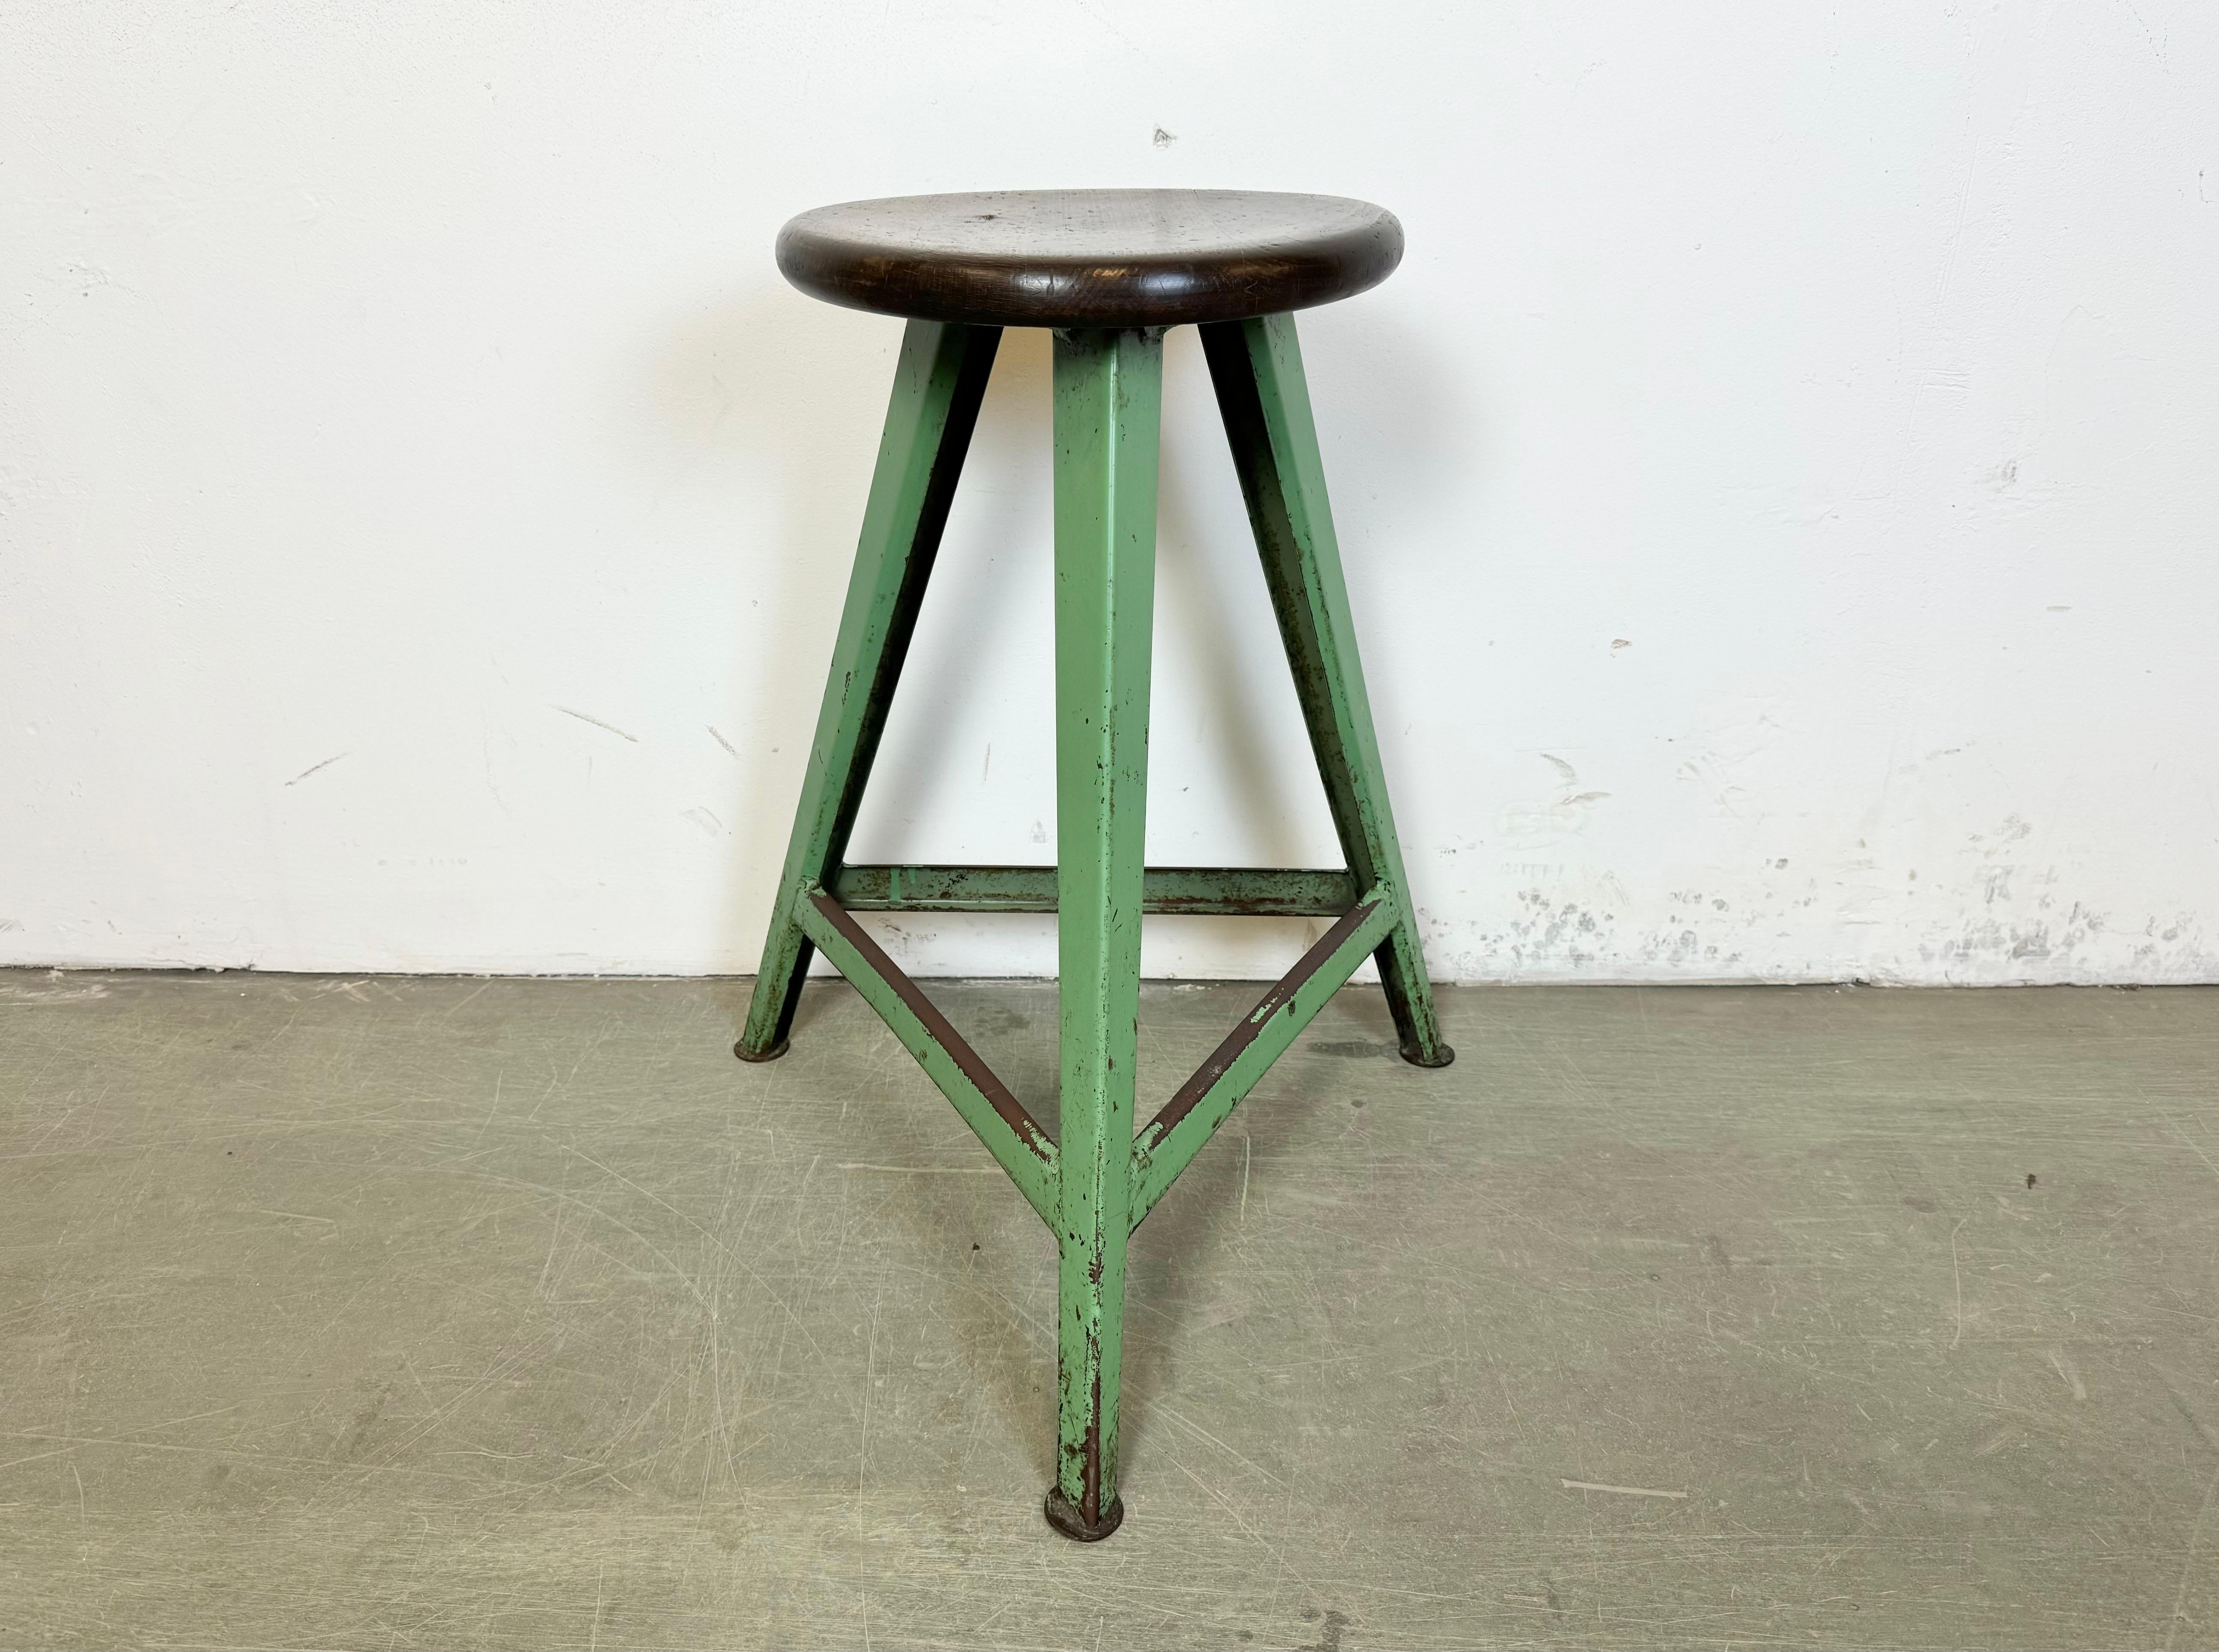 Tabouret d'usine industriel vintage fabriqué en ex-Tchécoslovaquie dans les années 1960 Il présente une assise en bois et une structure en métal vert. Le poids du tabouret est de 4,7 kg.
Le diamètre du siège est de 32 cm.